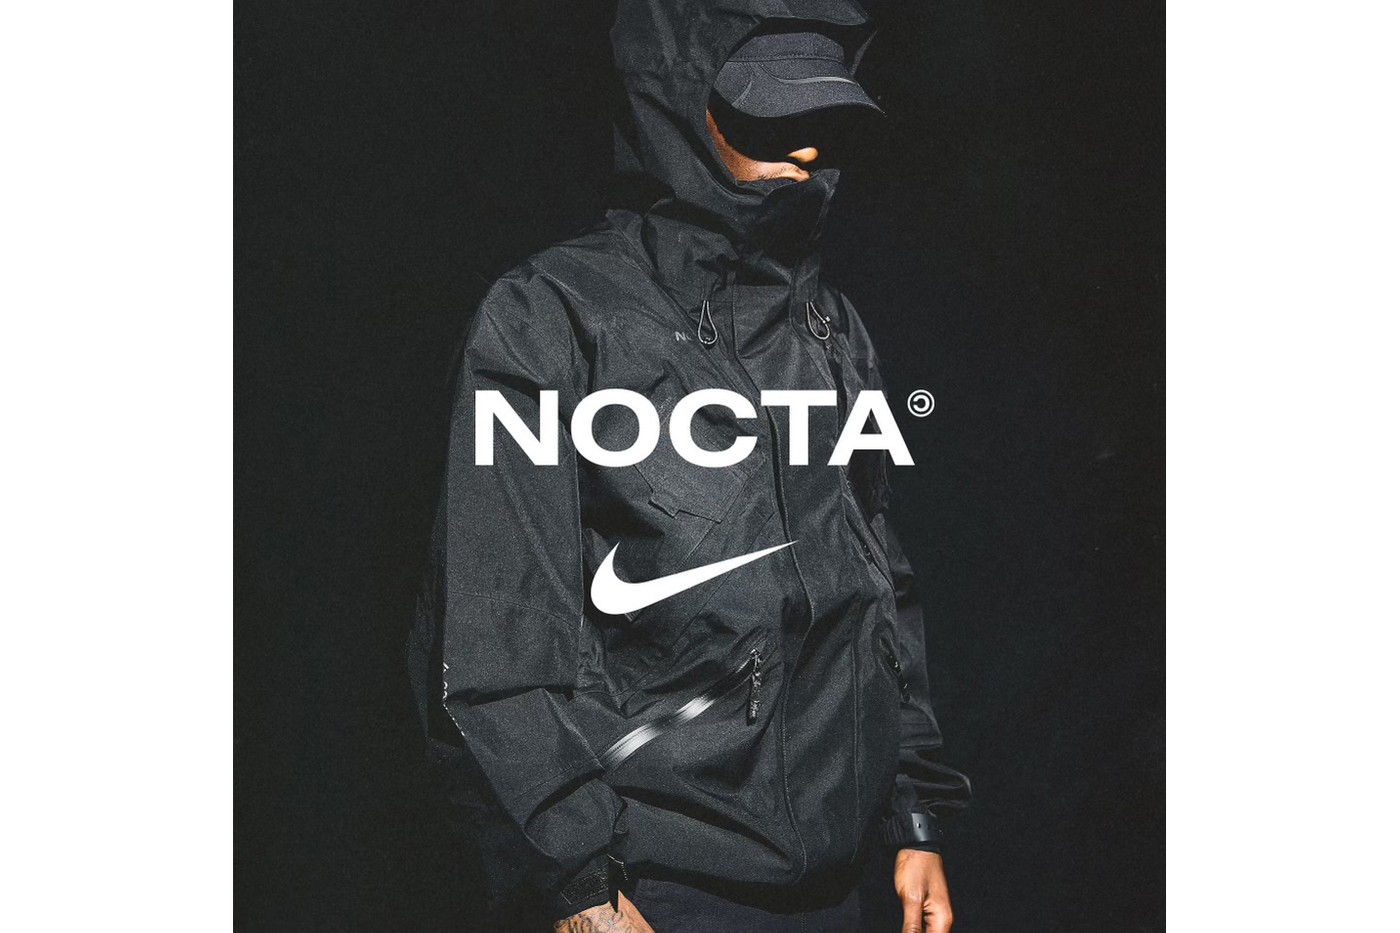 Дрейк и Nike показали лукбук второго дропа совместной линии NOCTA (фото 5)